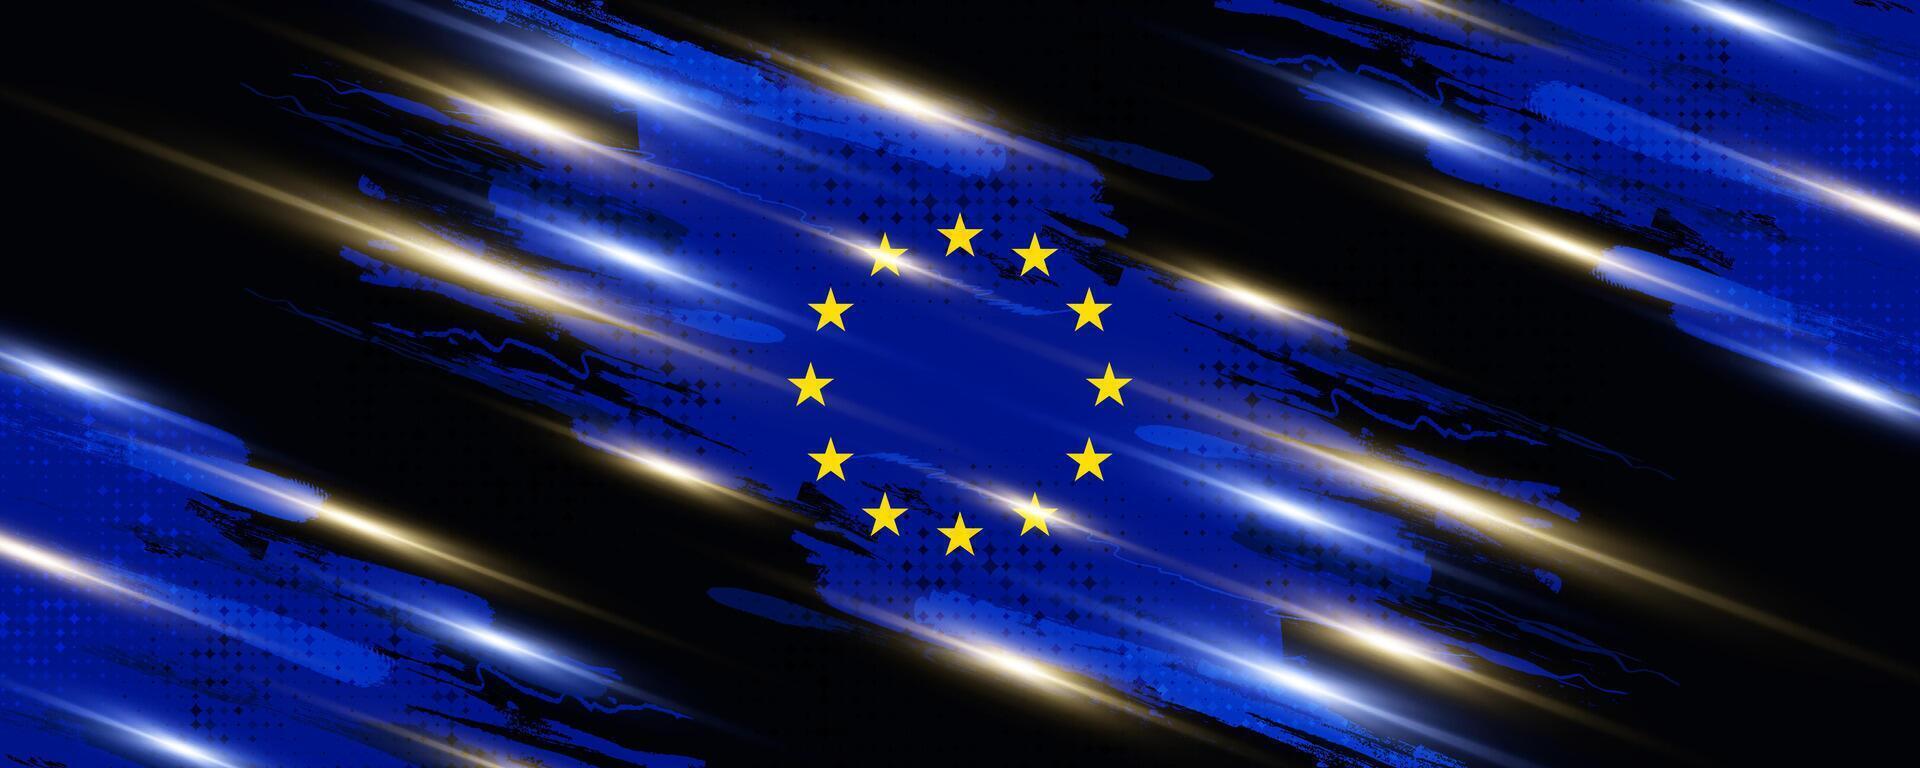 europeu União bandeira dentro escova pintura estilo com meio-tom e brilhando luz efeitos. bandeira do Europa com grunge conceito vetor